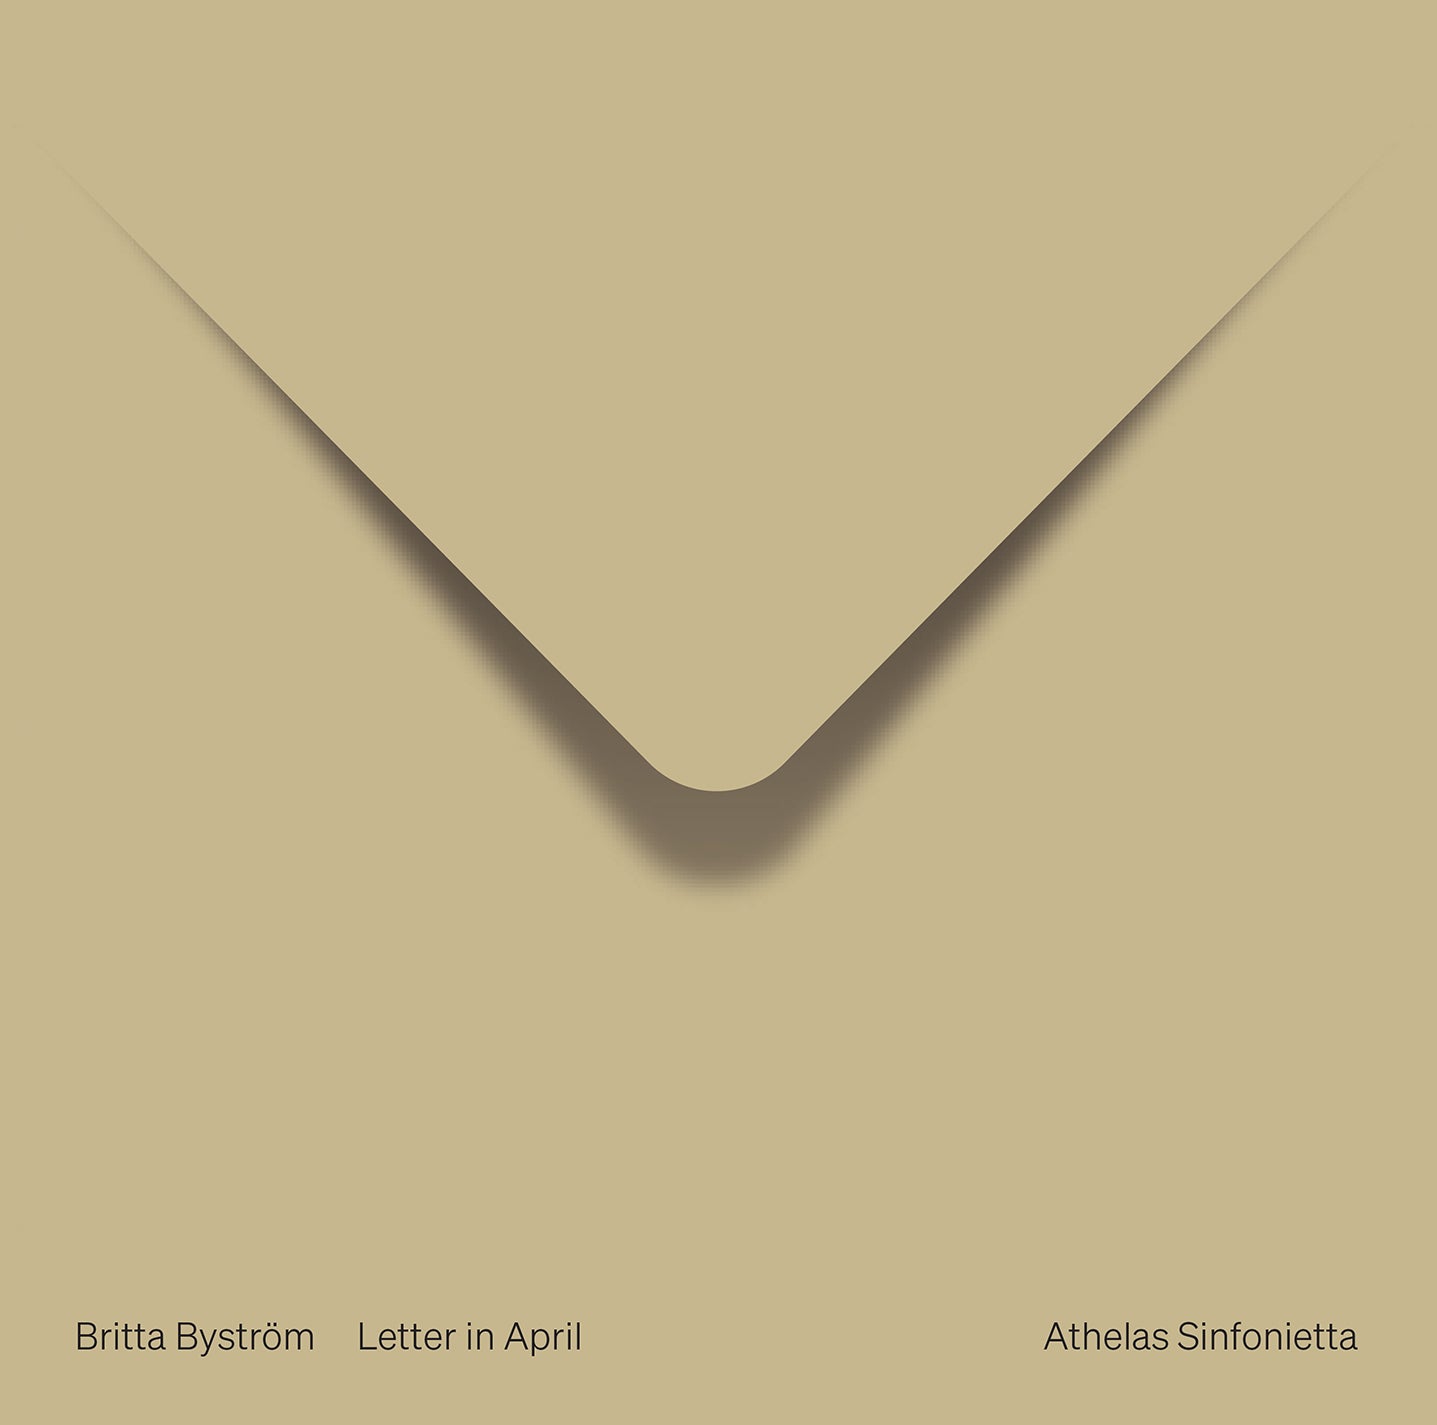 Bystrom: Letter in April / Søe, Edlund, Athelas Sinfonietta